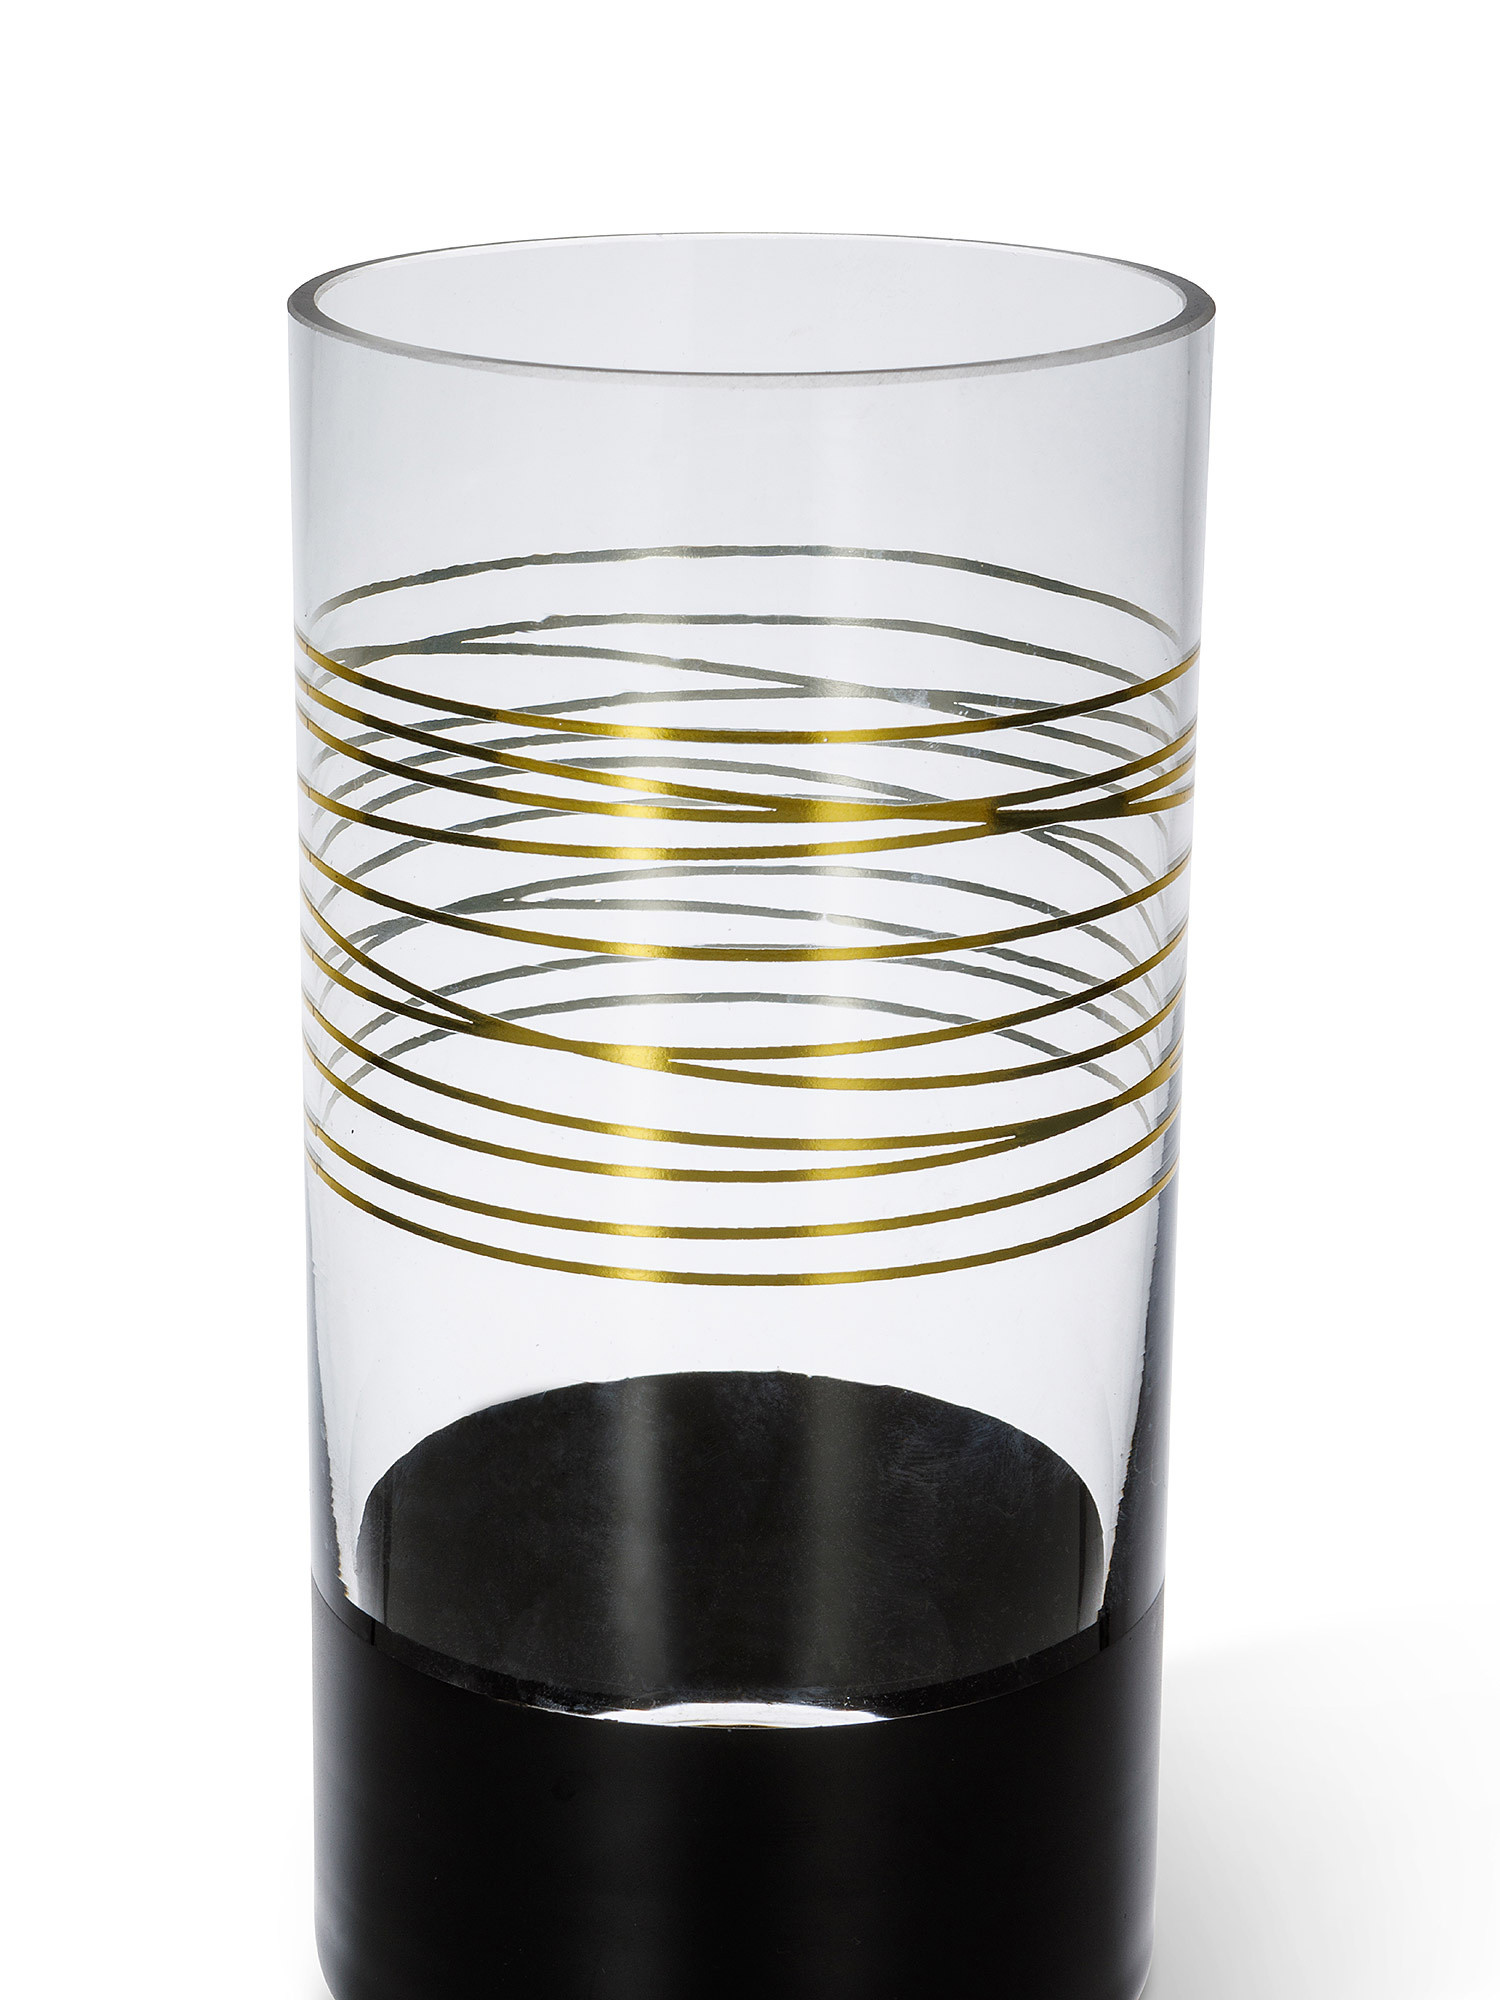 Glass vase with black and gold details, Transparent, large image number 1